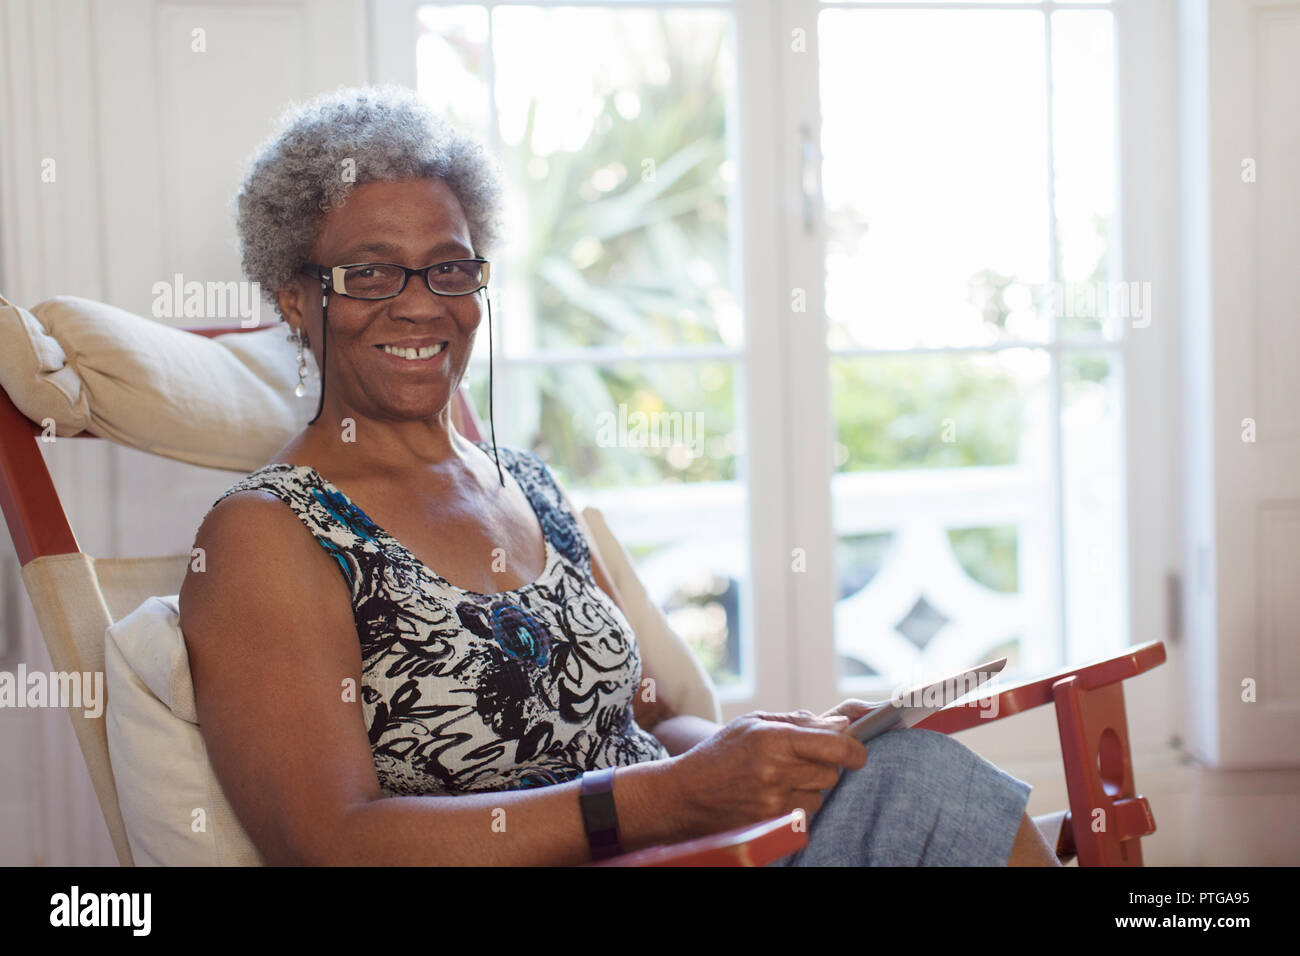 Portrait souriant, confiant senior woman using digital tablet Banque D'Images